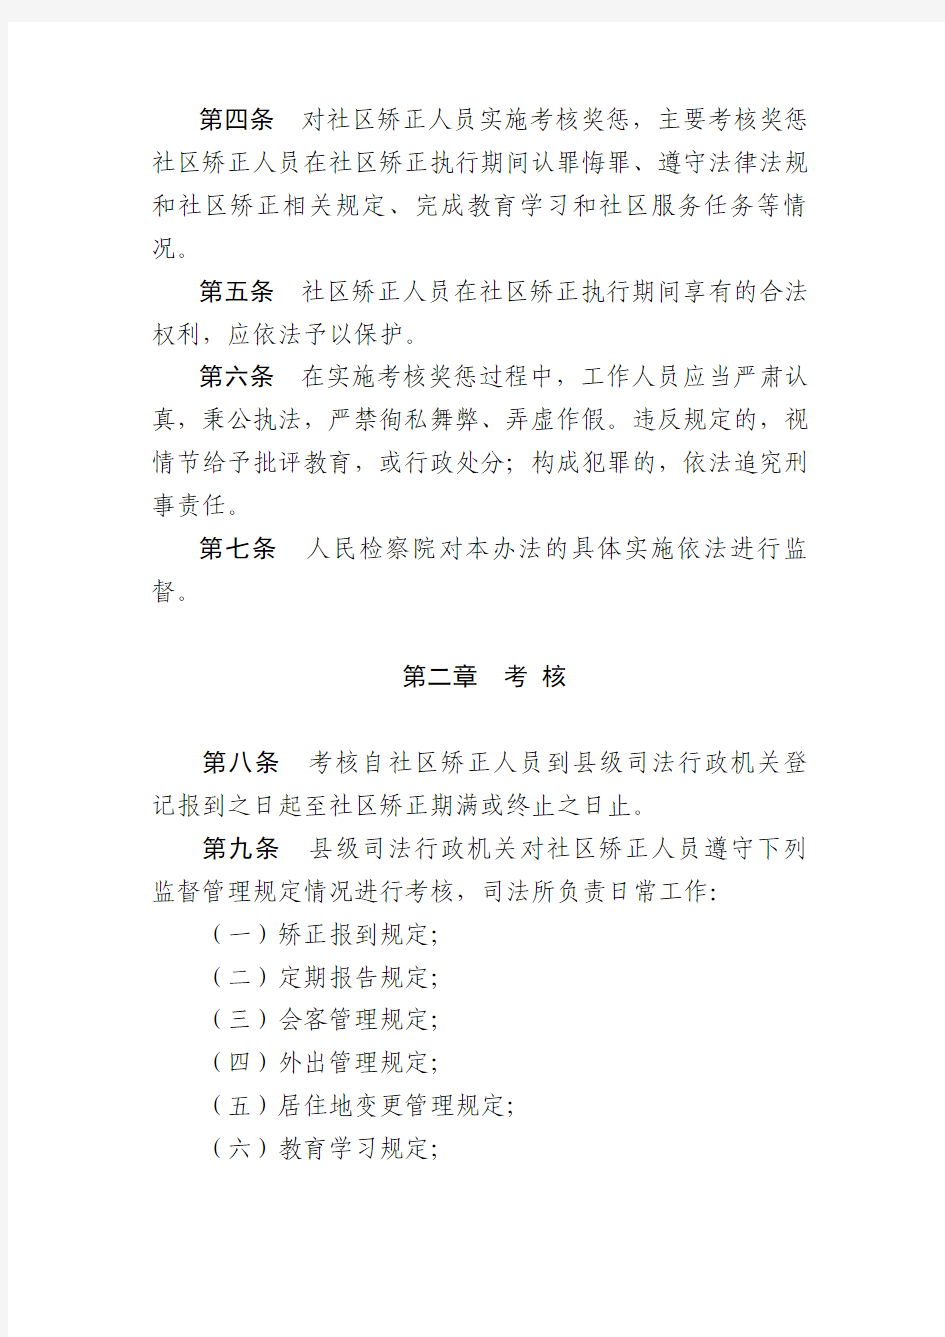 2013年浙江省社区矫正人员考核奖惩办法(试行)